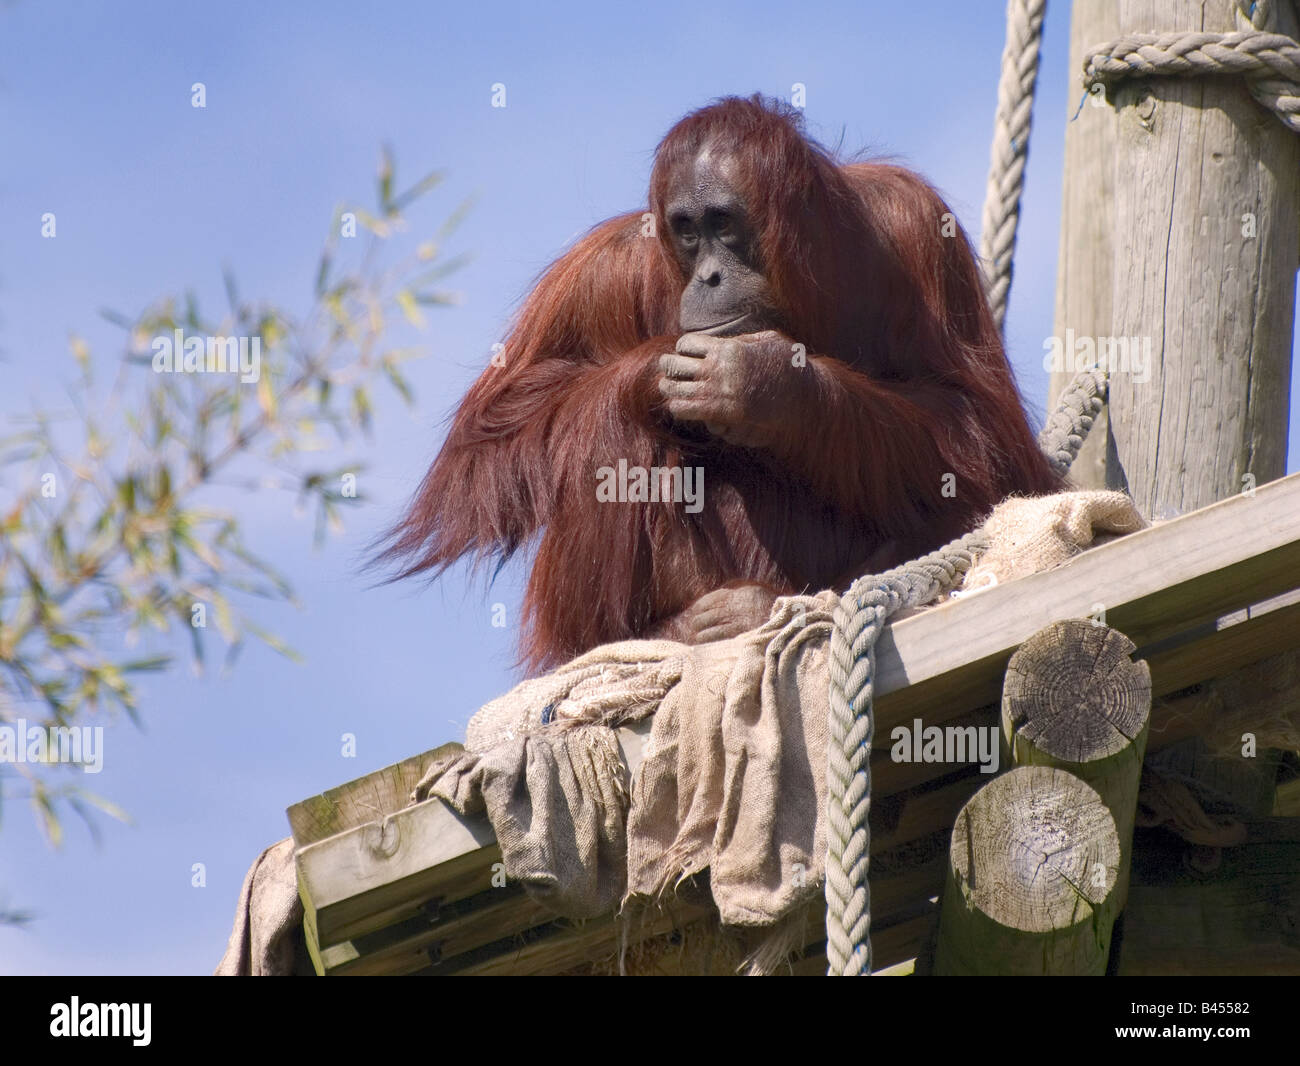 orangutang Stock Photo